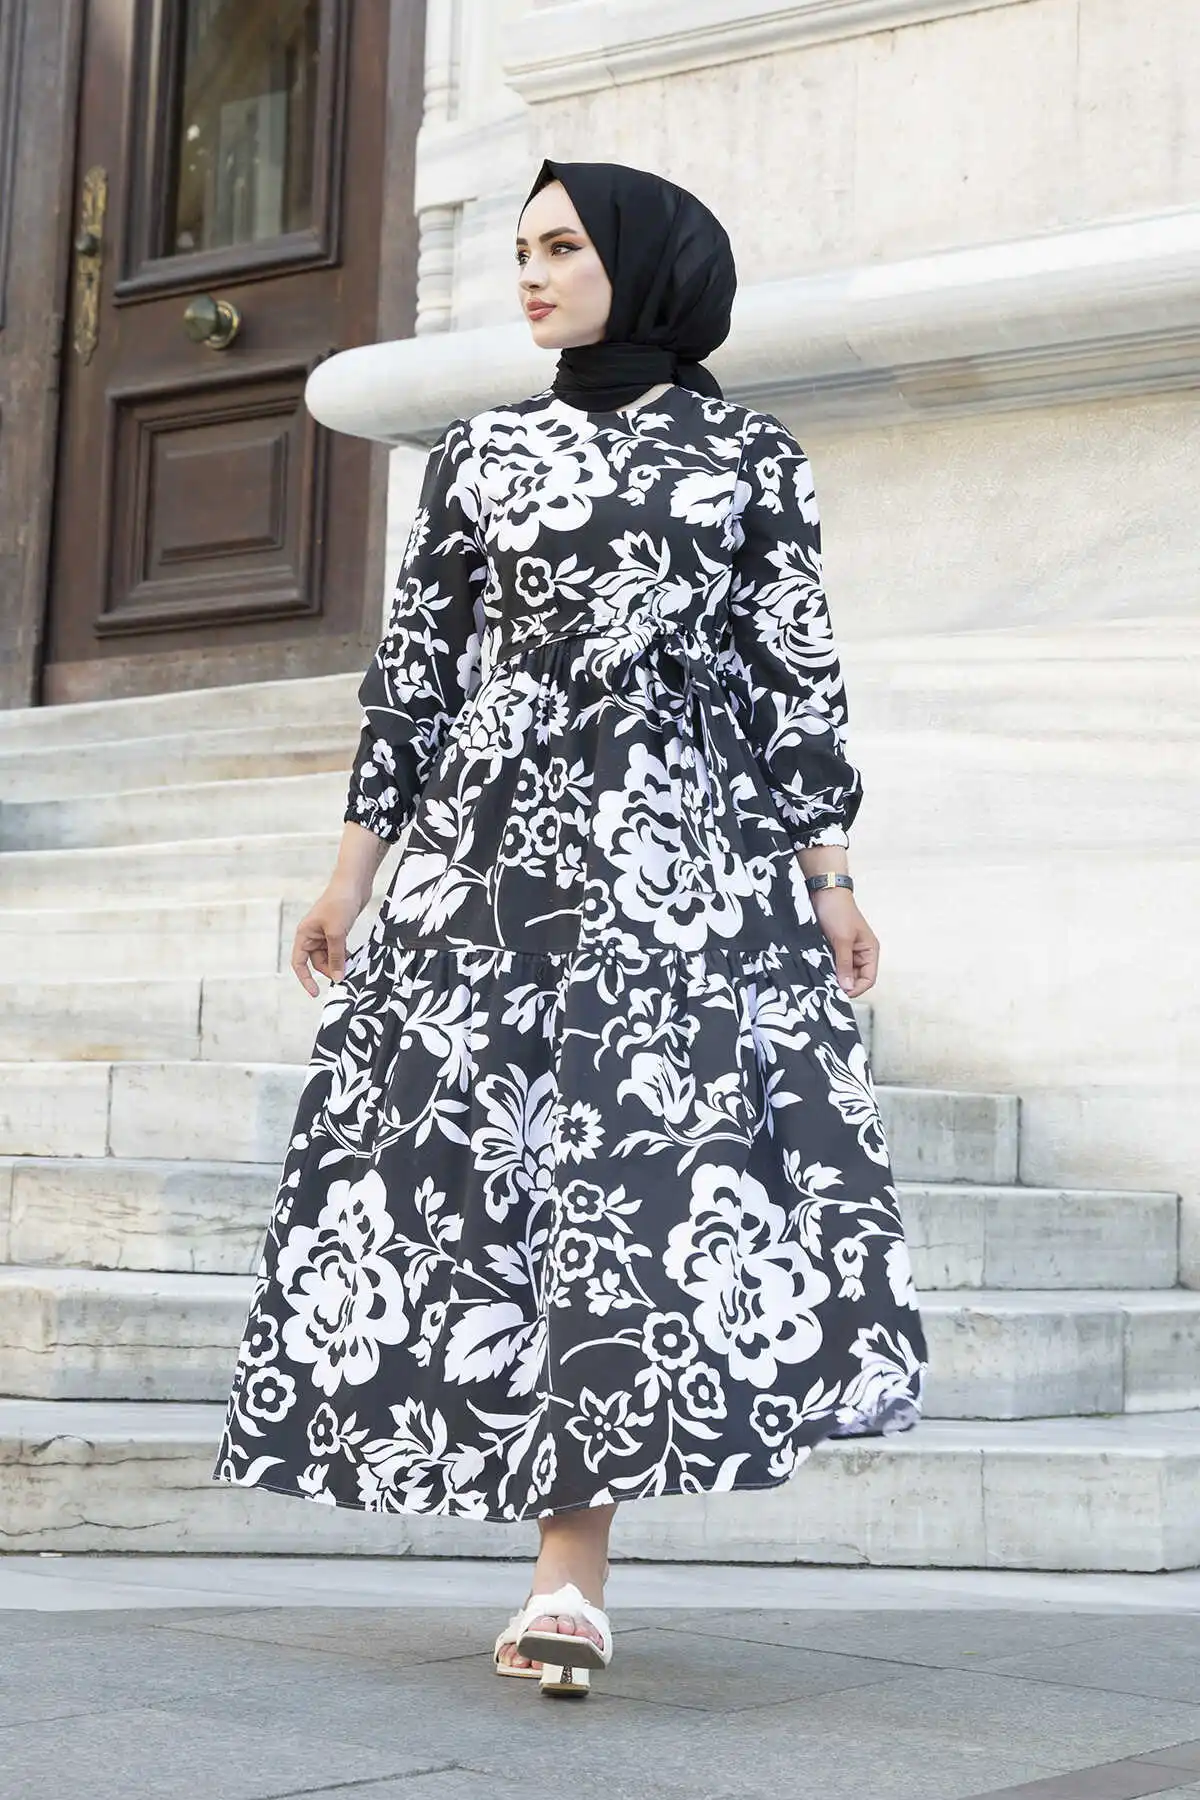 Платье женские платья 2021 кафтан абайя длинные мусульманские Вечерние платья Хиджаб турецкий хиджаб для вечеринки повседневная женская оде...